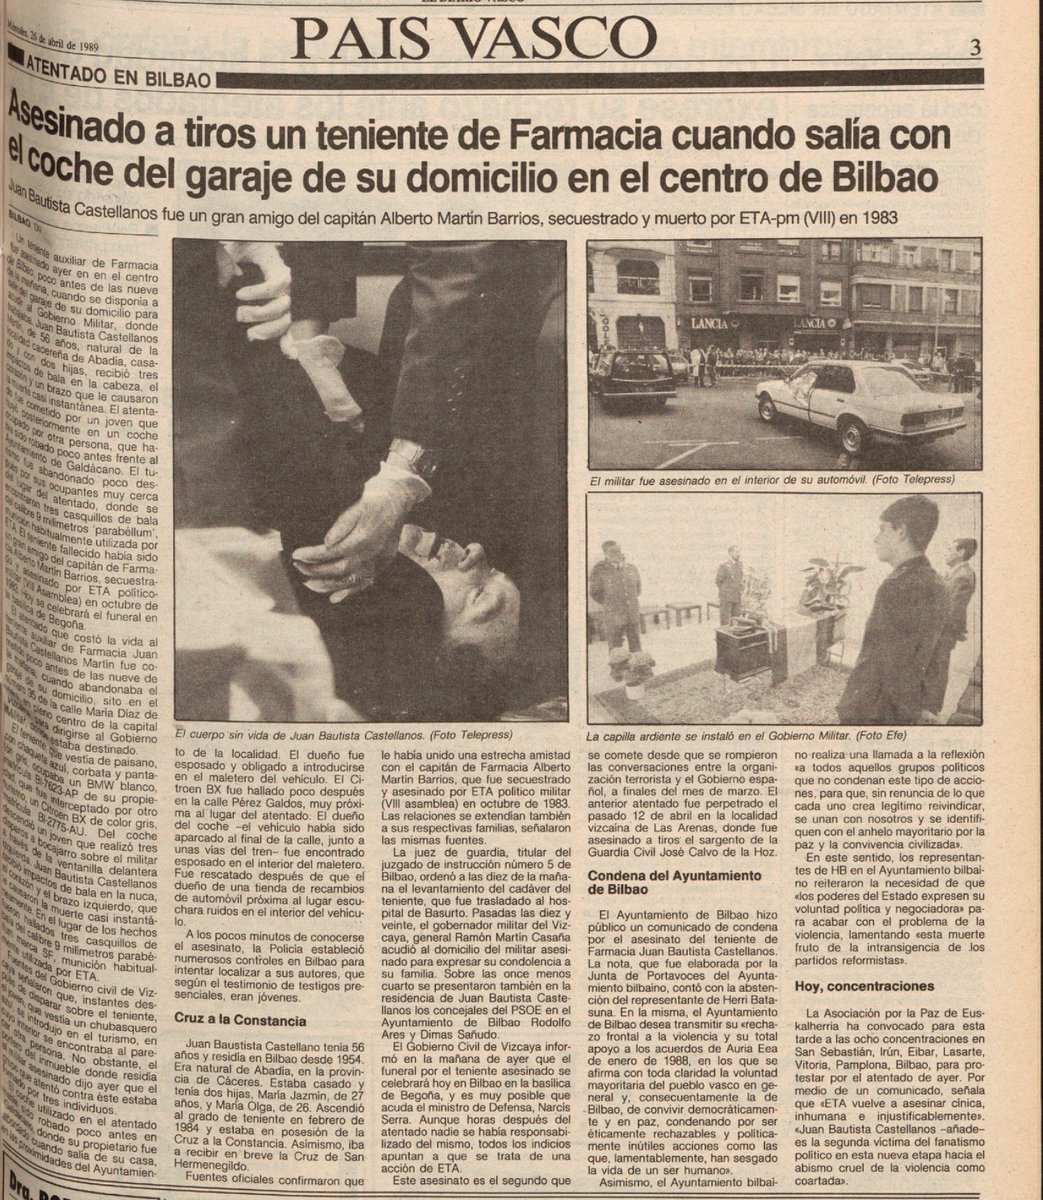 Un día como hoy de 1989 #ETA asesinó en #Bilbao al teniente de Farmacia del @EjercitoTierra JUAN BAUTISTA CASTELLANOS MARTÍN

Salía del garaje de su casa para ir al #GobiernoMilitar cuando otro coche le cerró el paso.

Del mismo bajó un pistolero que le disparó 3 tiros.

#MEMORIA